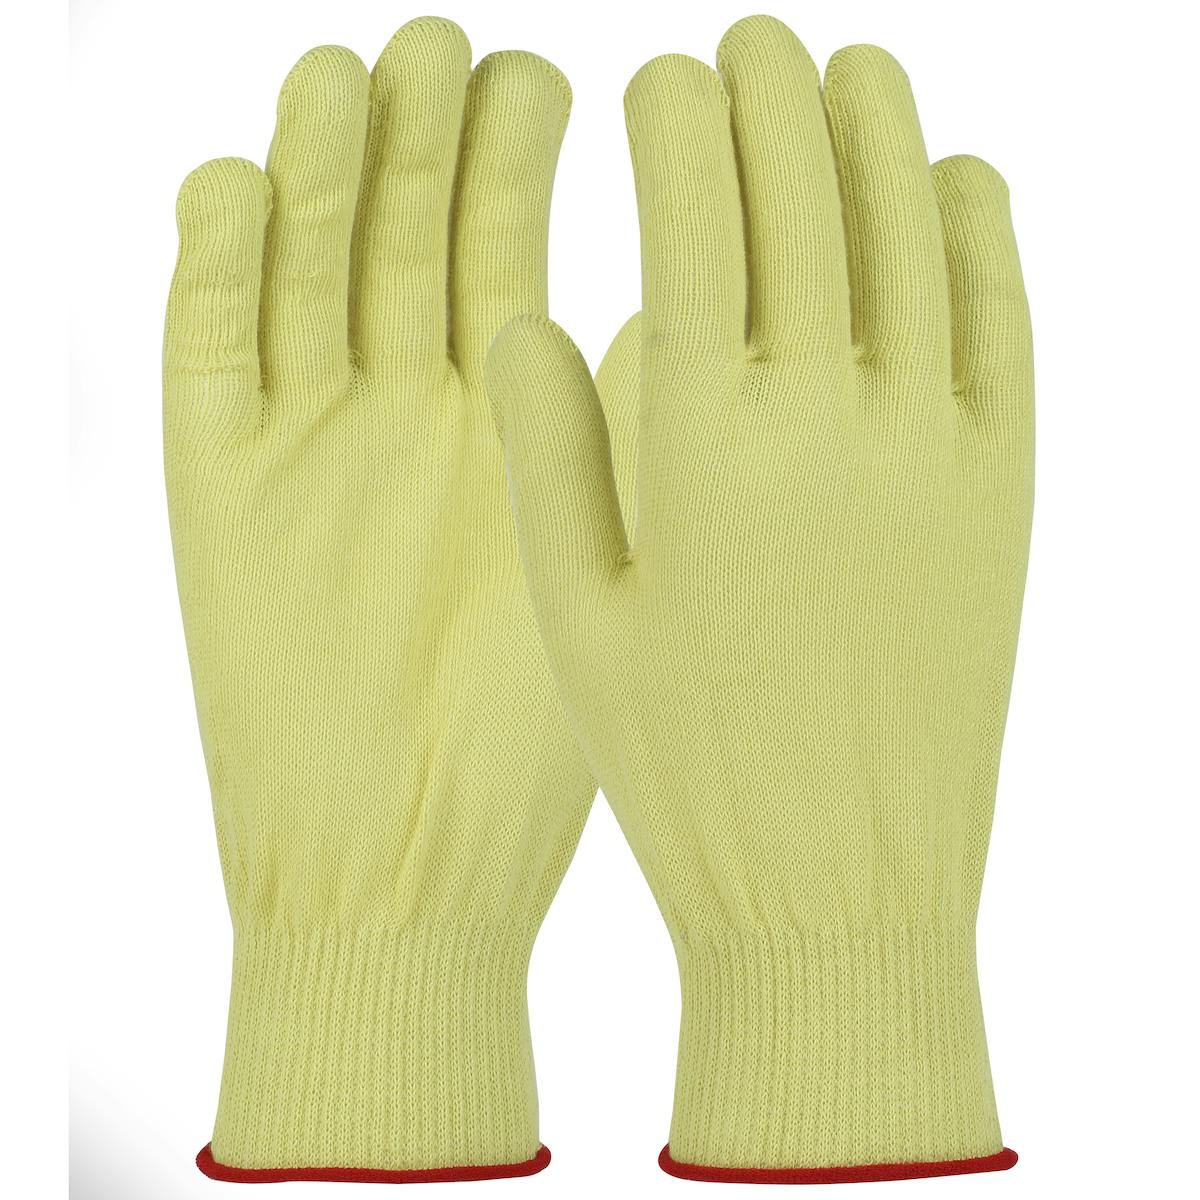 Kut Gard® Seamless Knit Aramid Glove - Light Weight (MTW13)